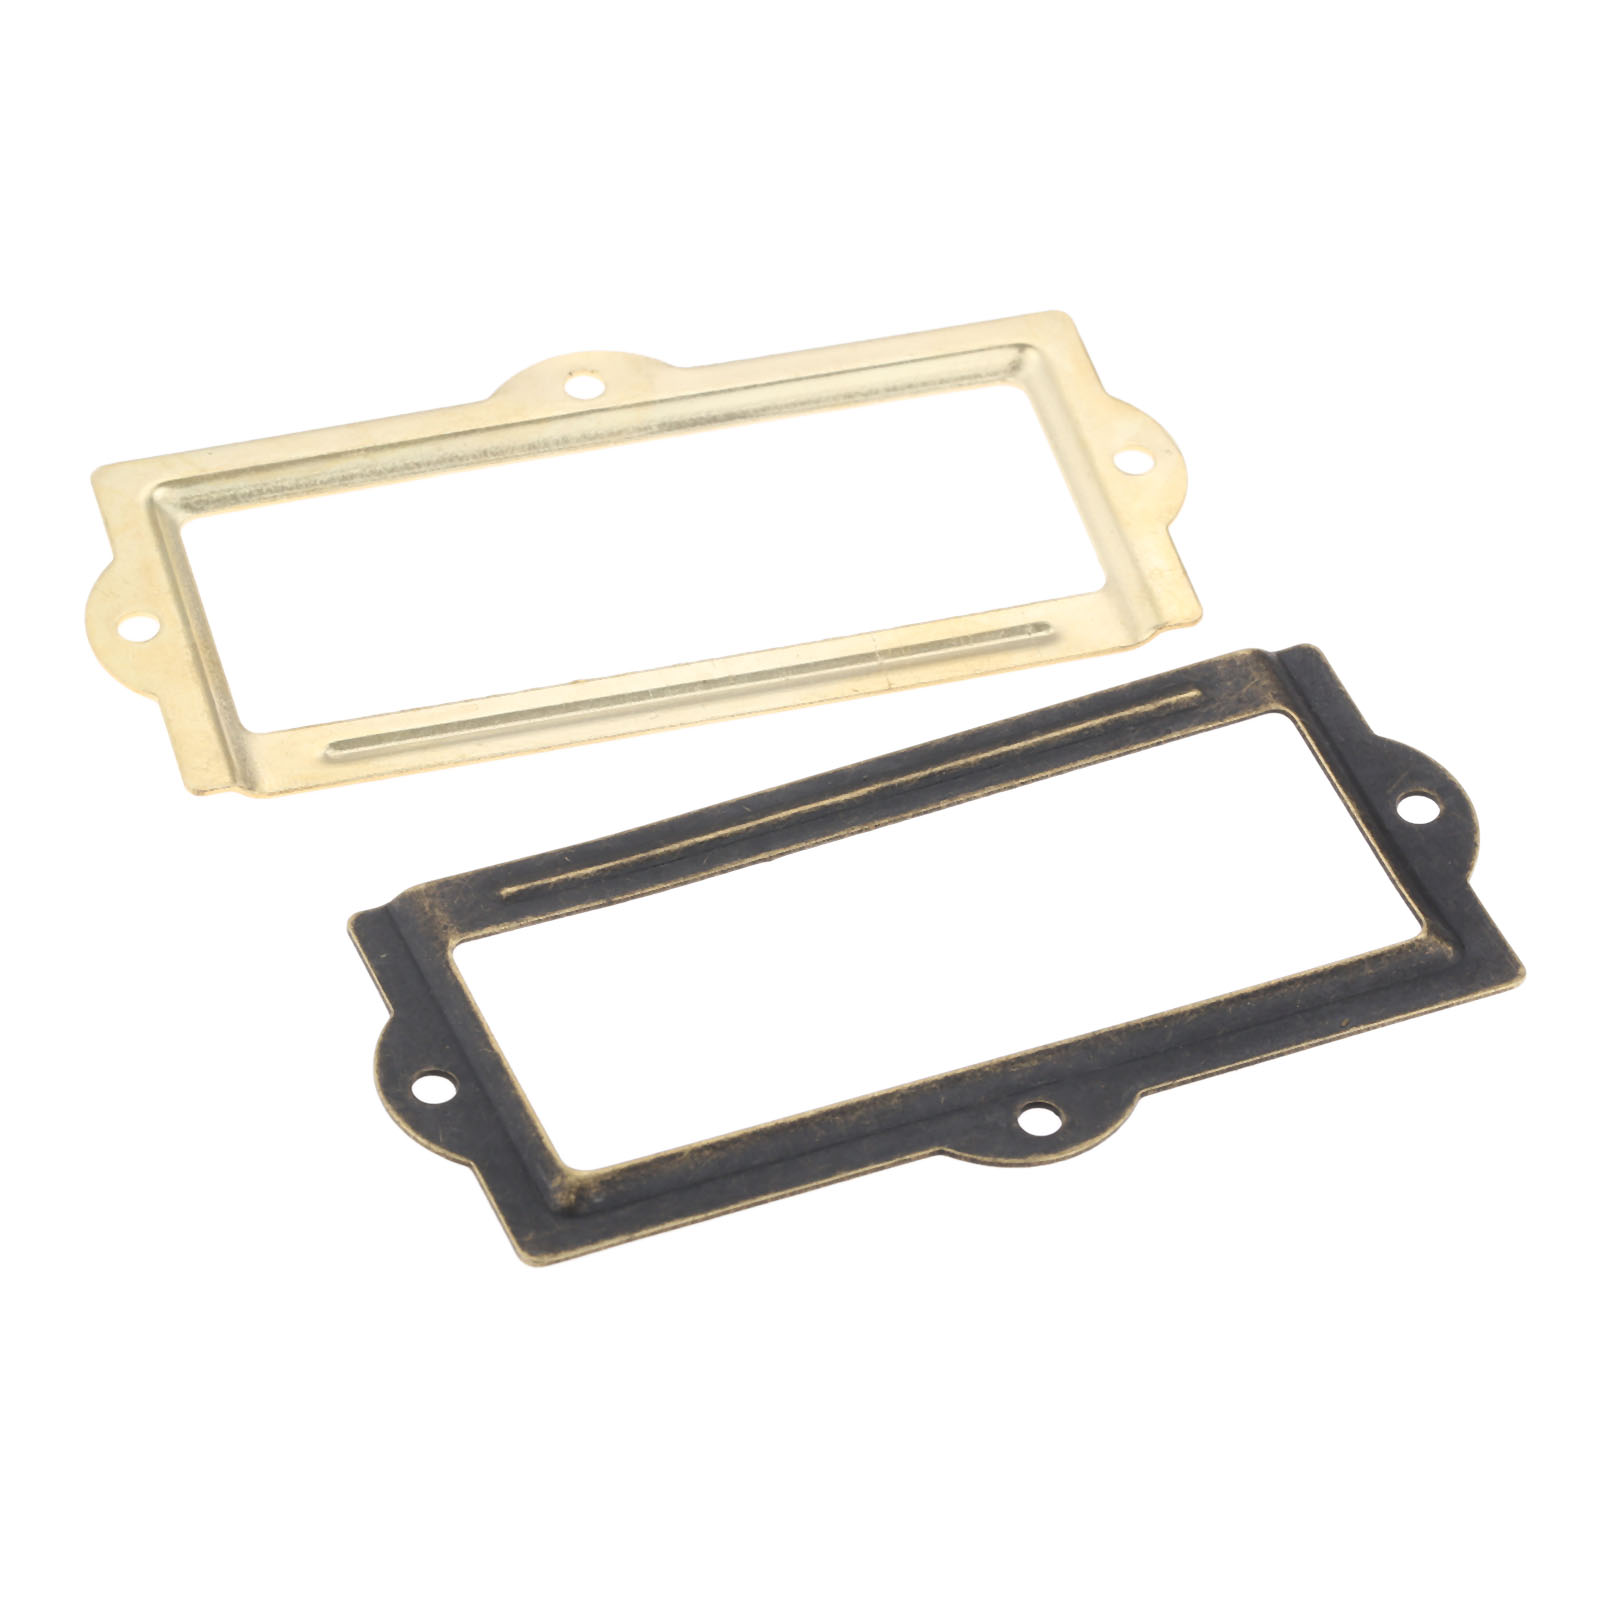 2 Pcs Label Pull Frame Handle File Name Card Holder for Furniture Cabinet Drawer Box Case Label Tag Frames Cabinet Pulls 90*42mm